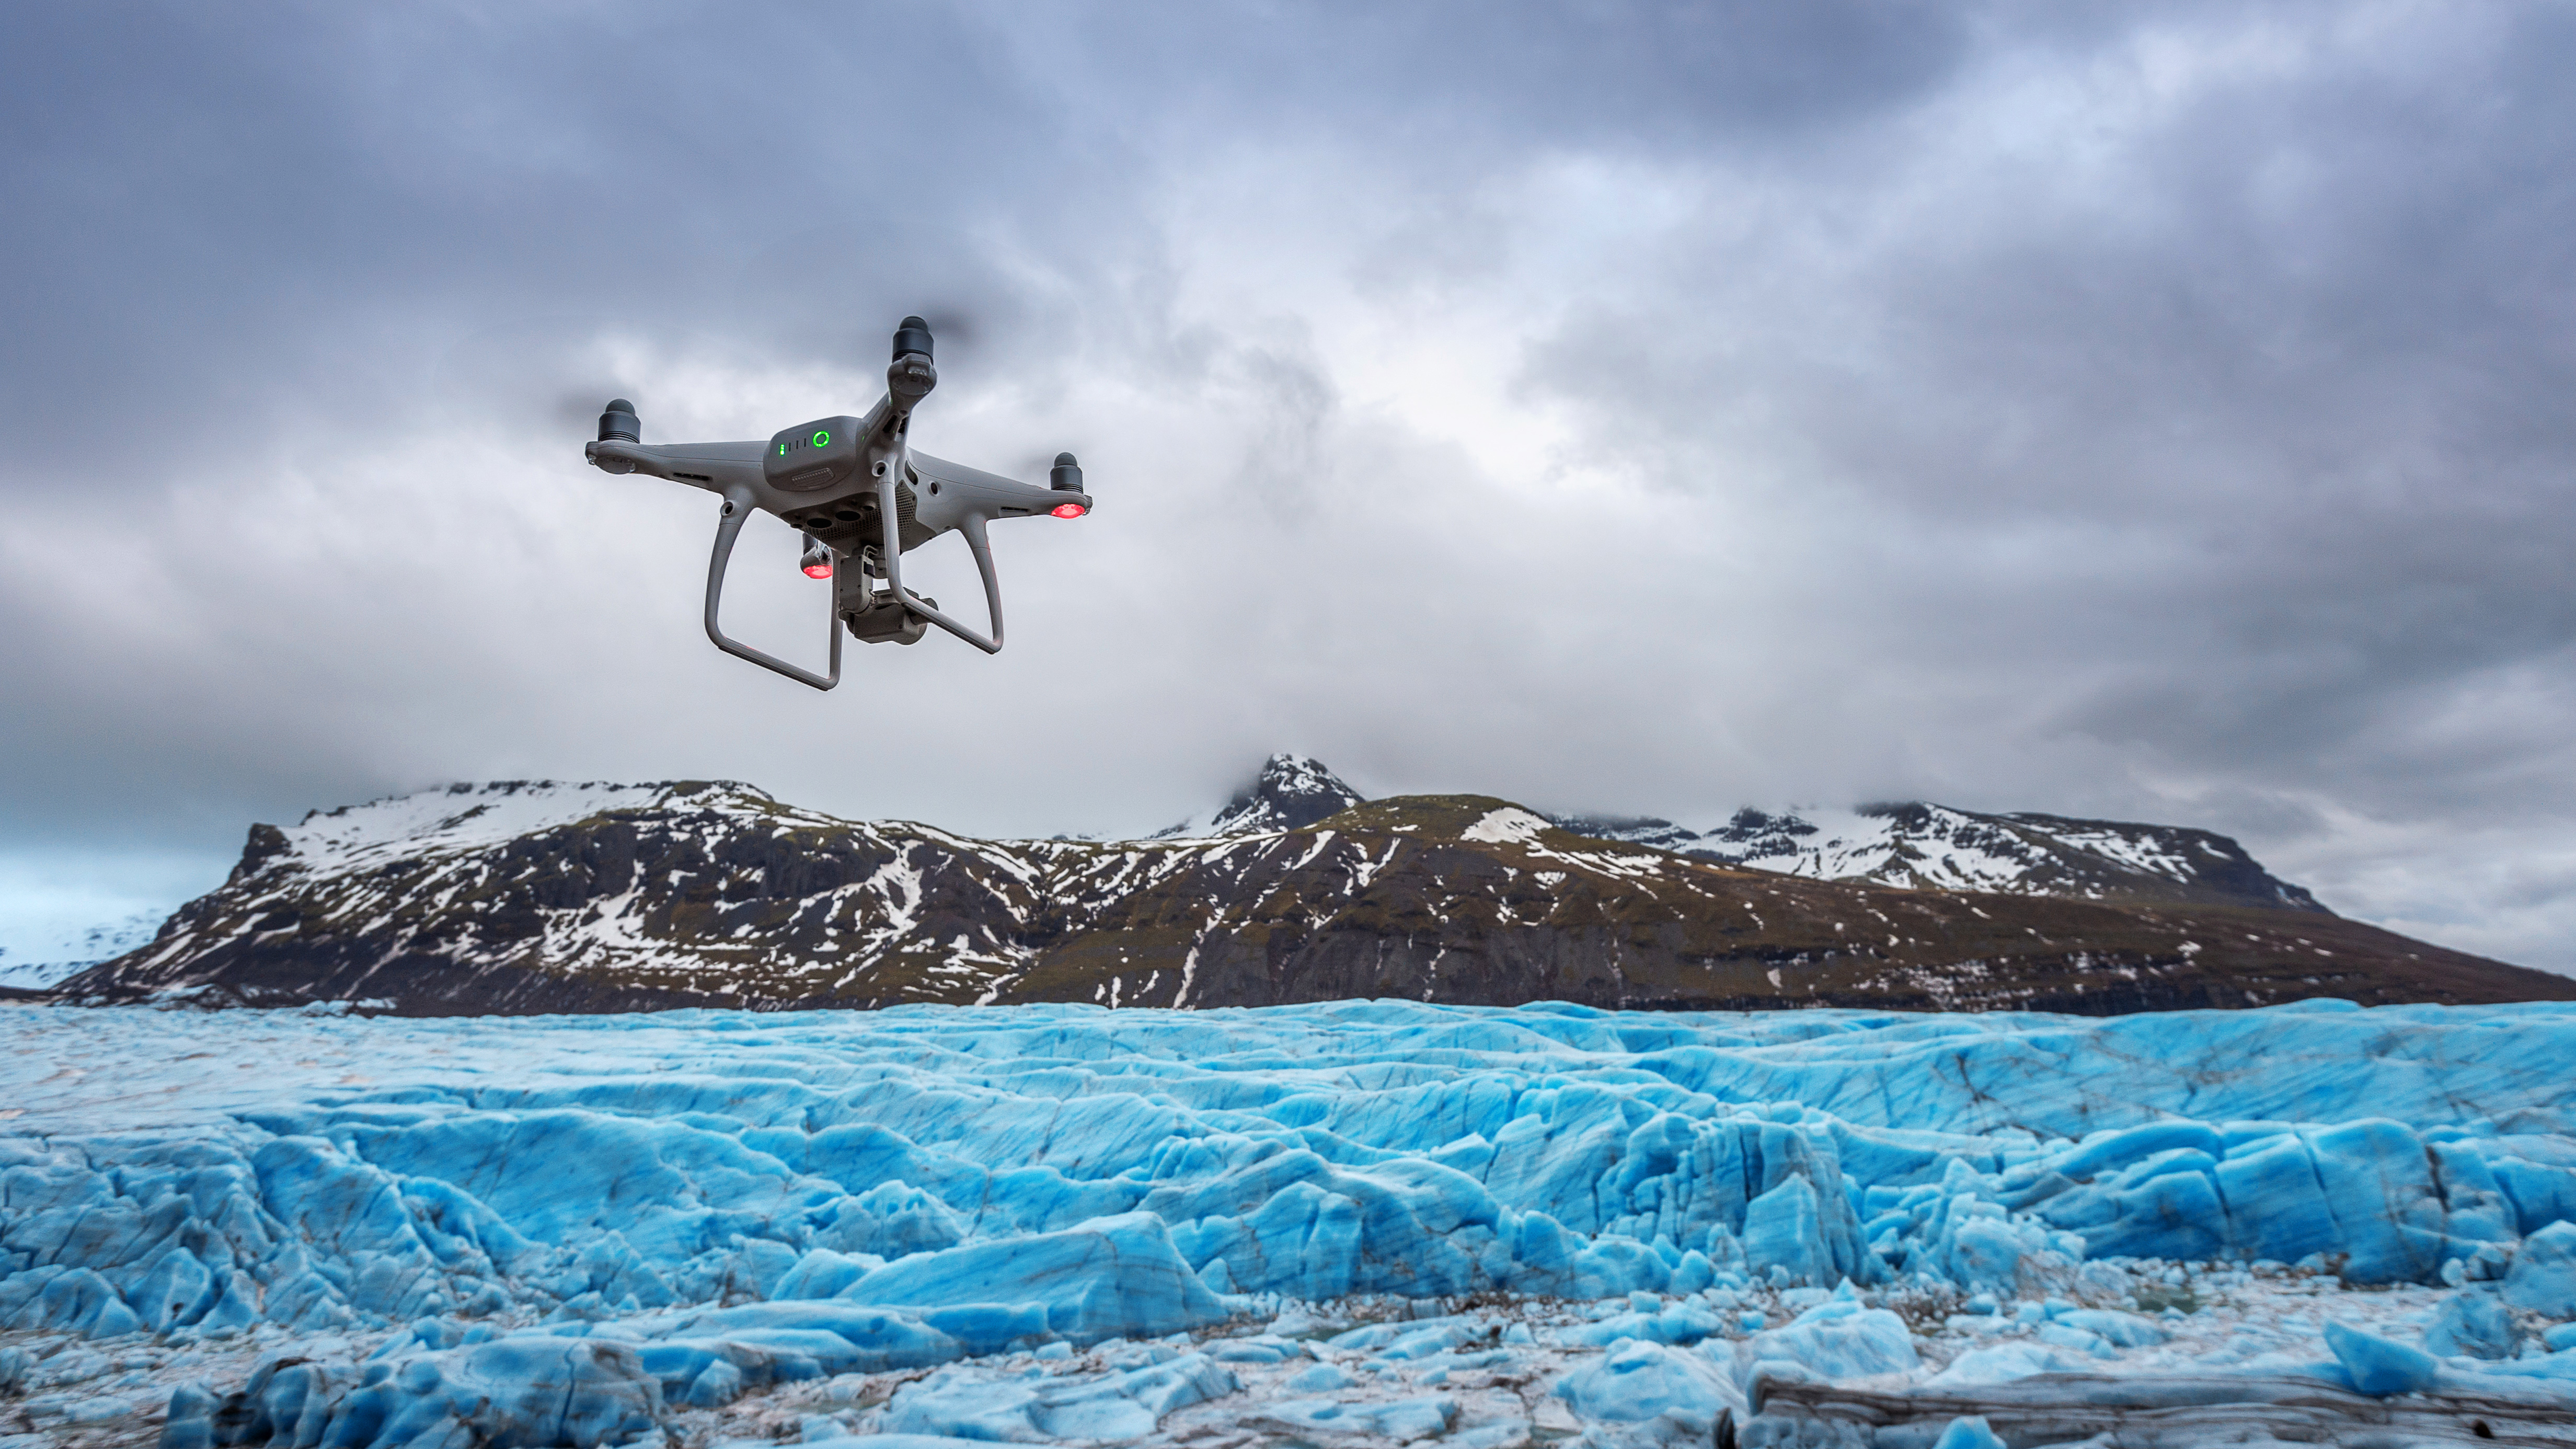 Норвежские ученые с помощью дронов картографируют толщину снега в горах